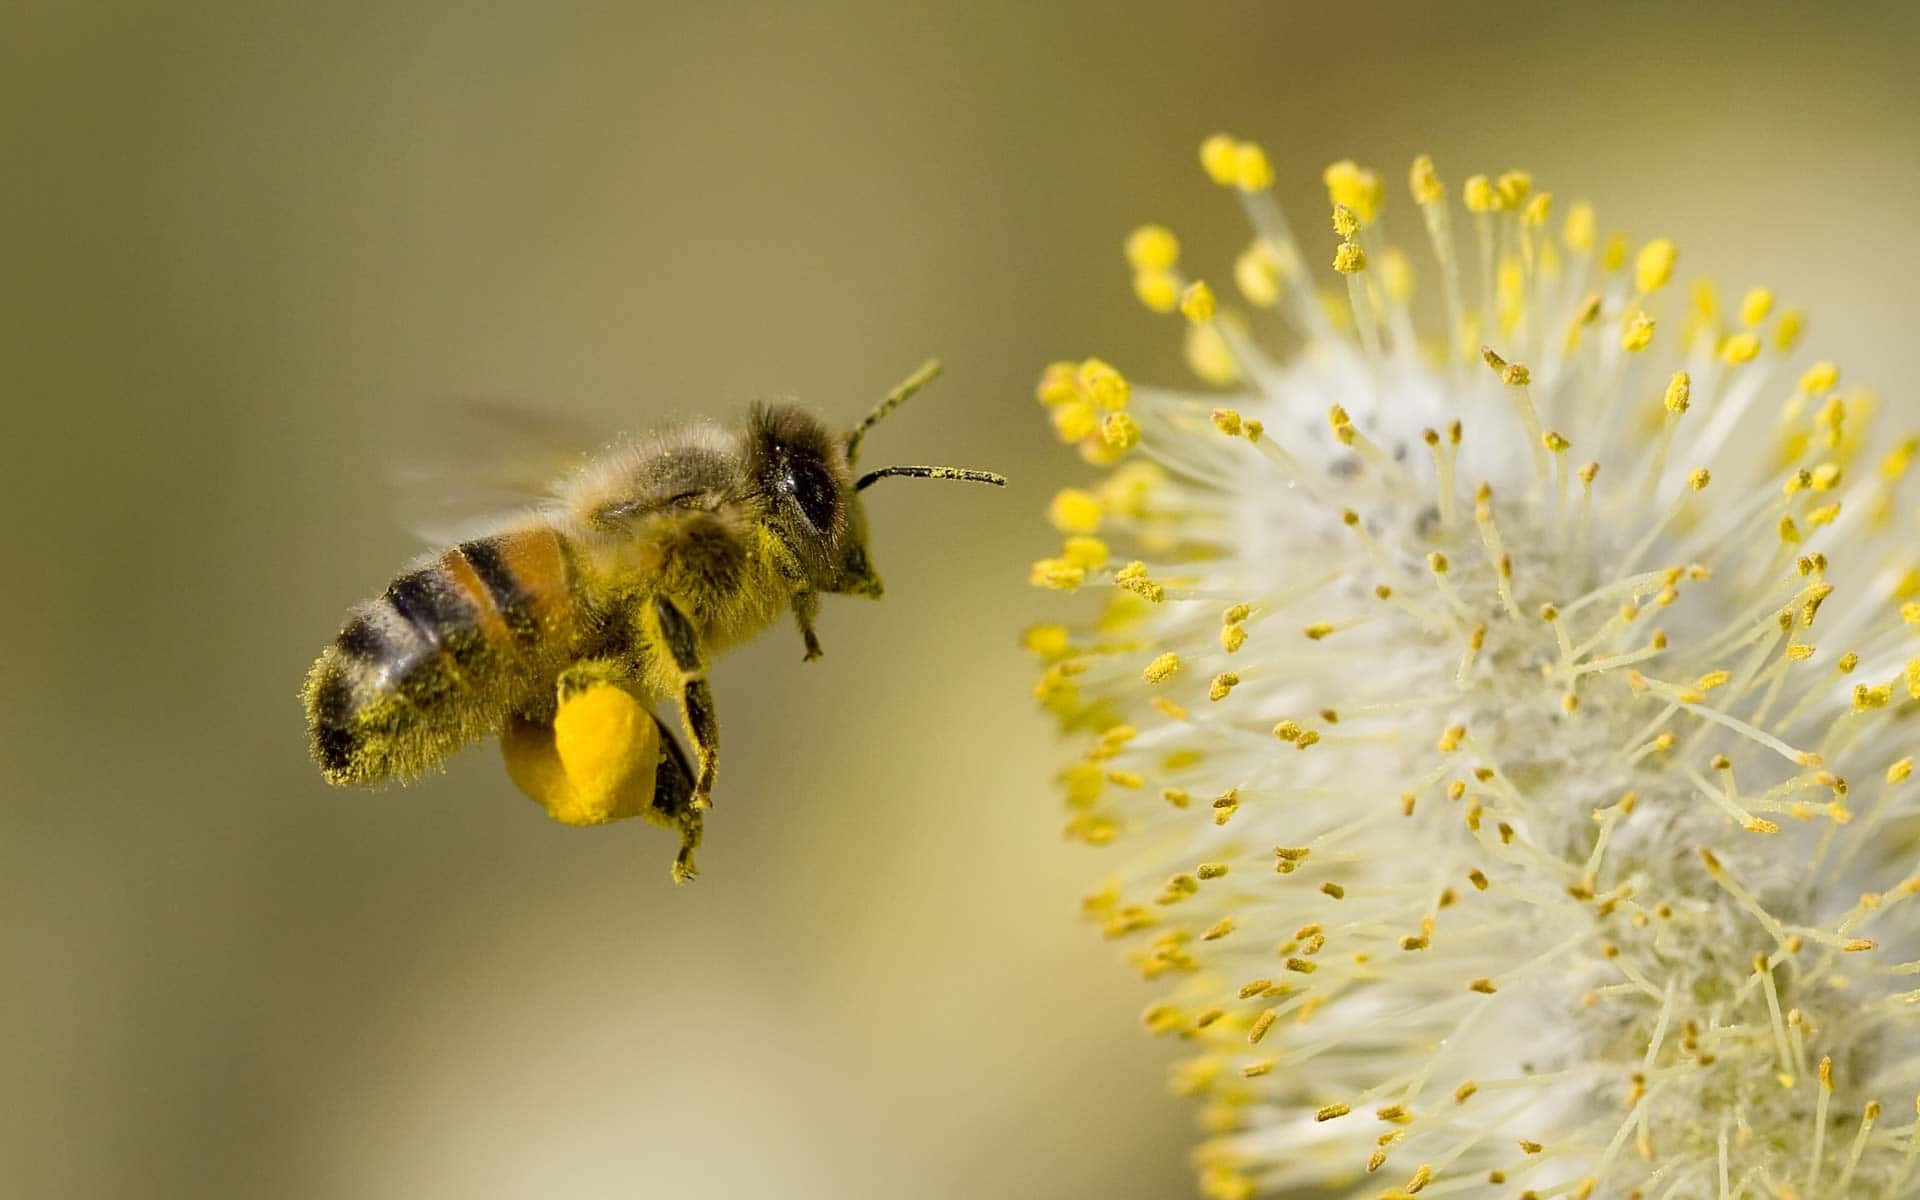 "A Taste of Sweetness - Honey Bee"